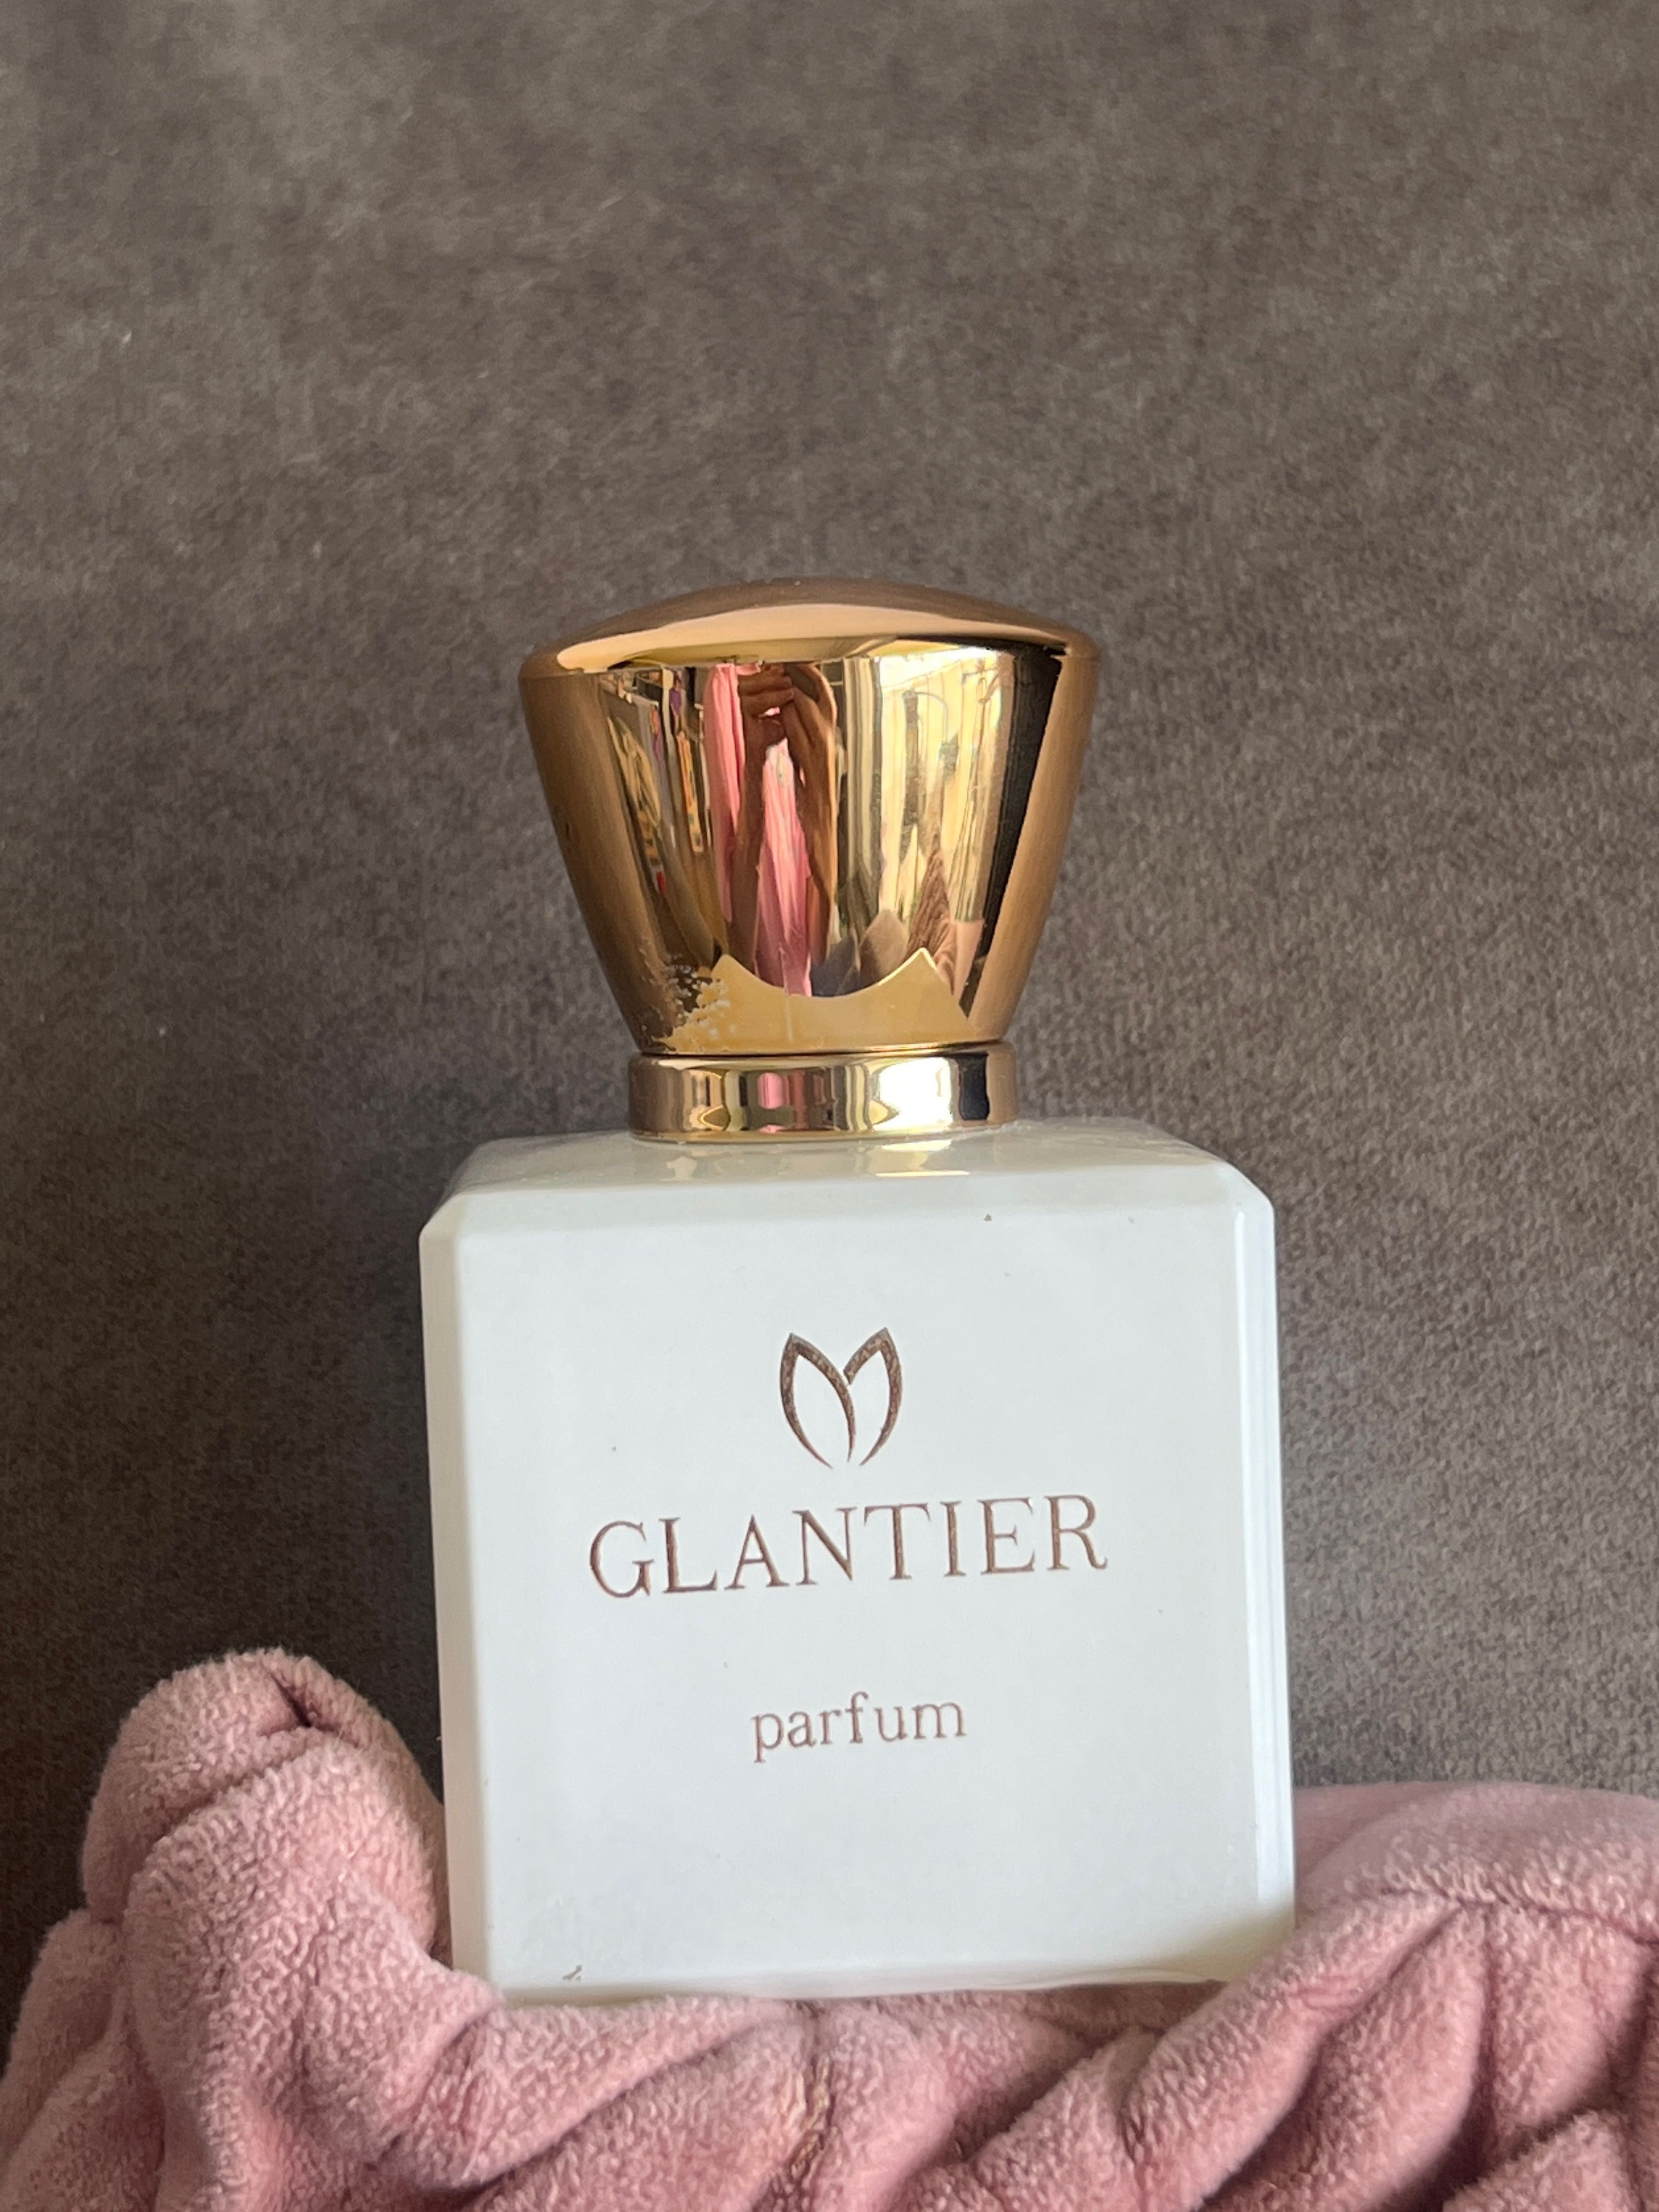 Glantier perfum premium